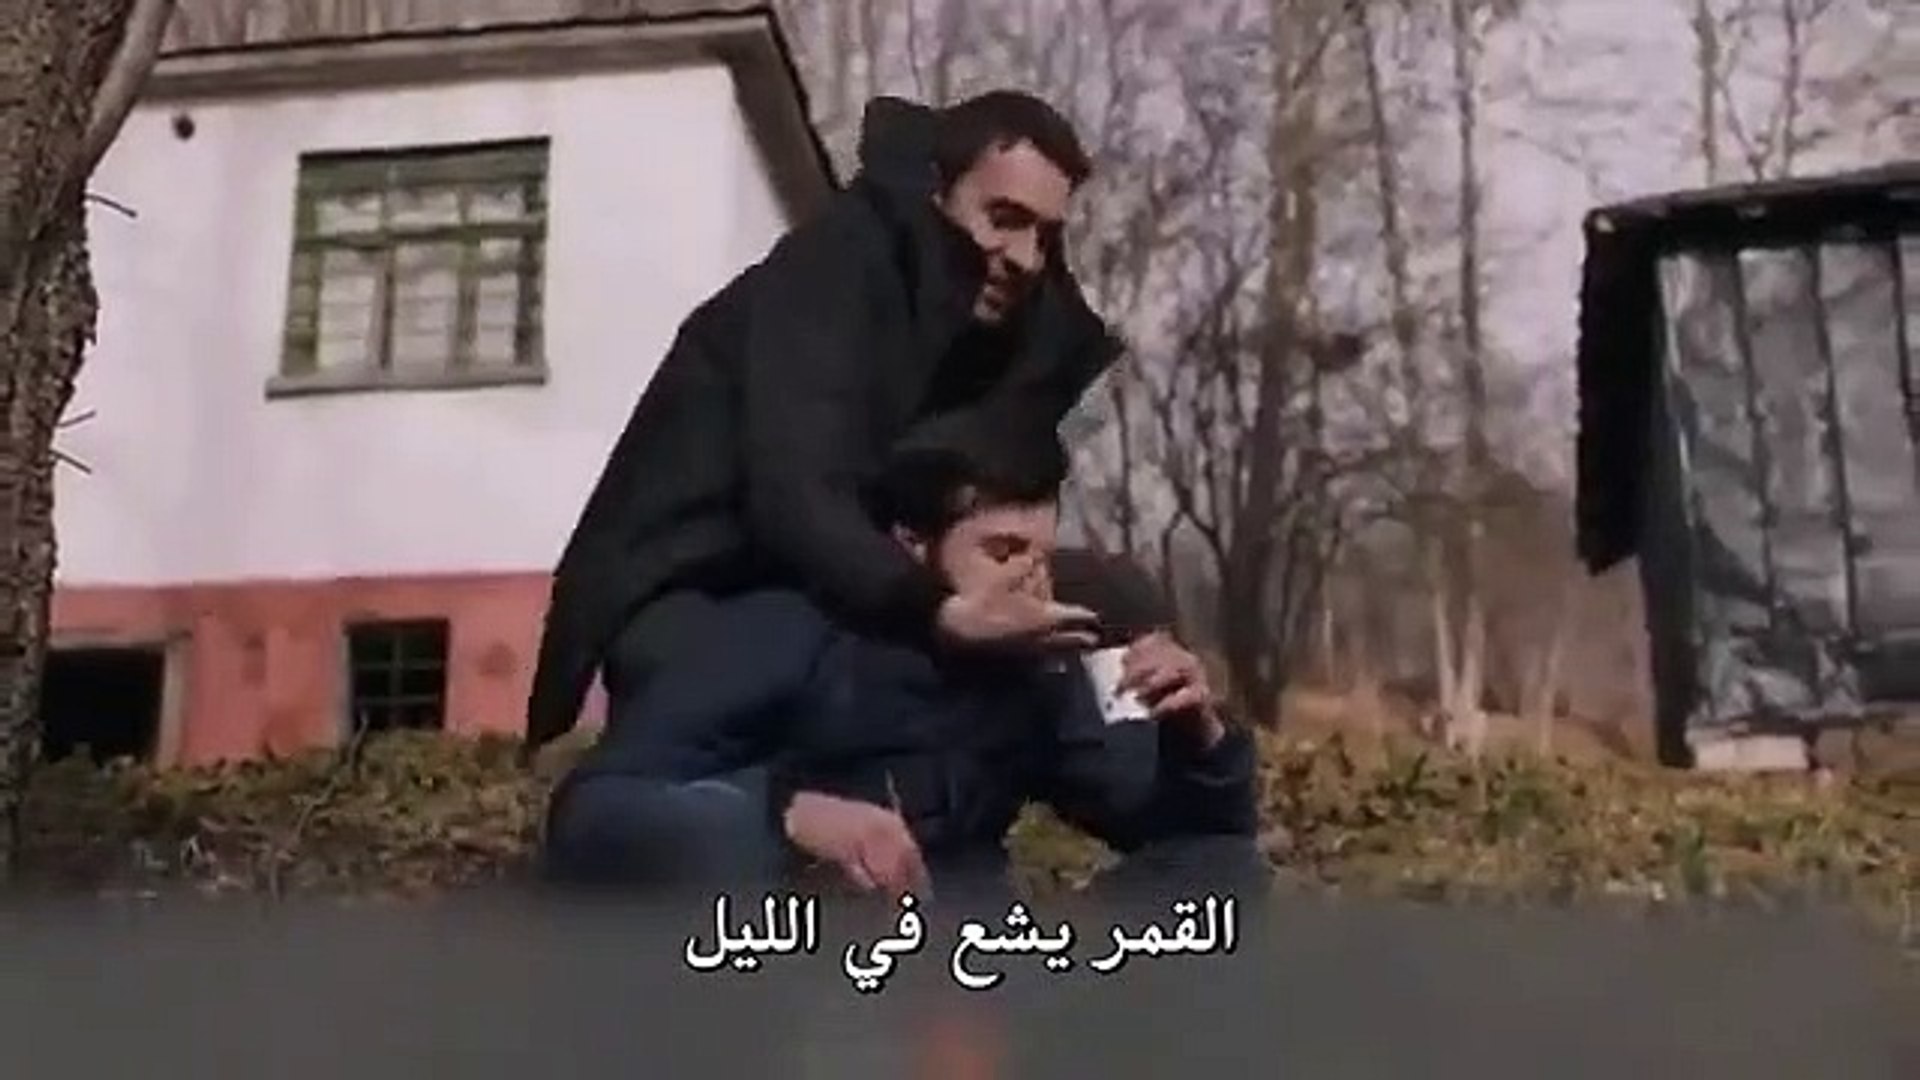 مسلسل اشرح ايها البحر الاسود الحلقة 41 اعلان 2 مترجم للعربية فيديو Dailymotion